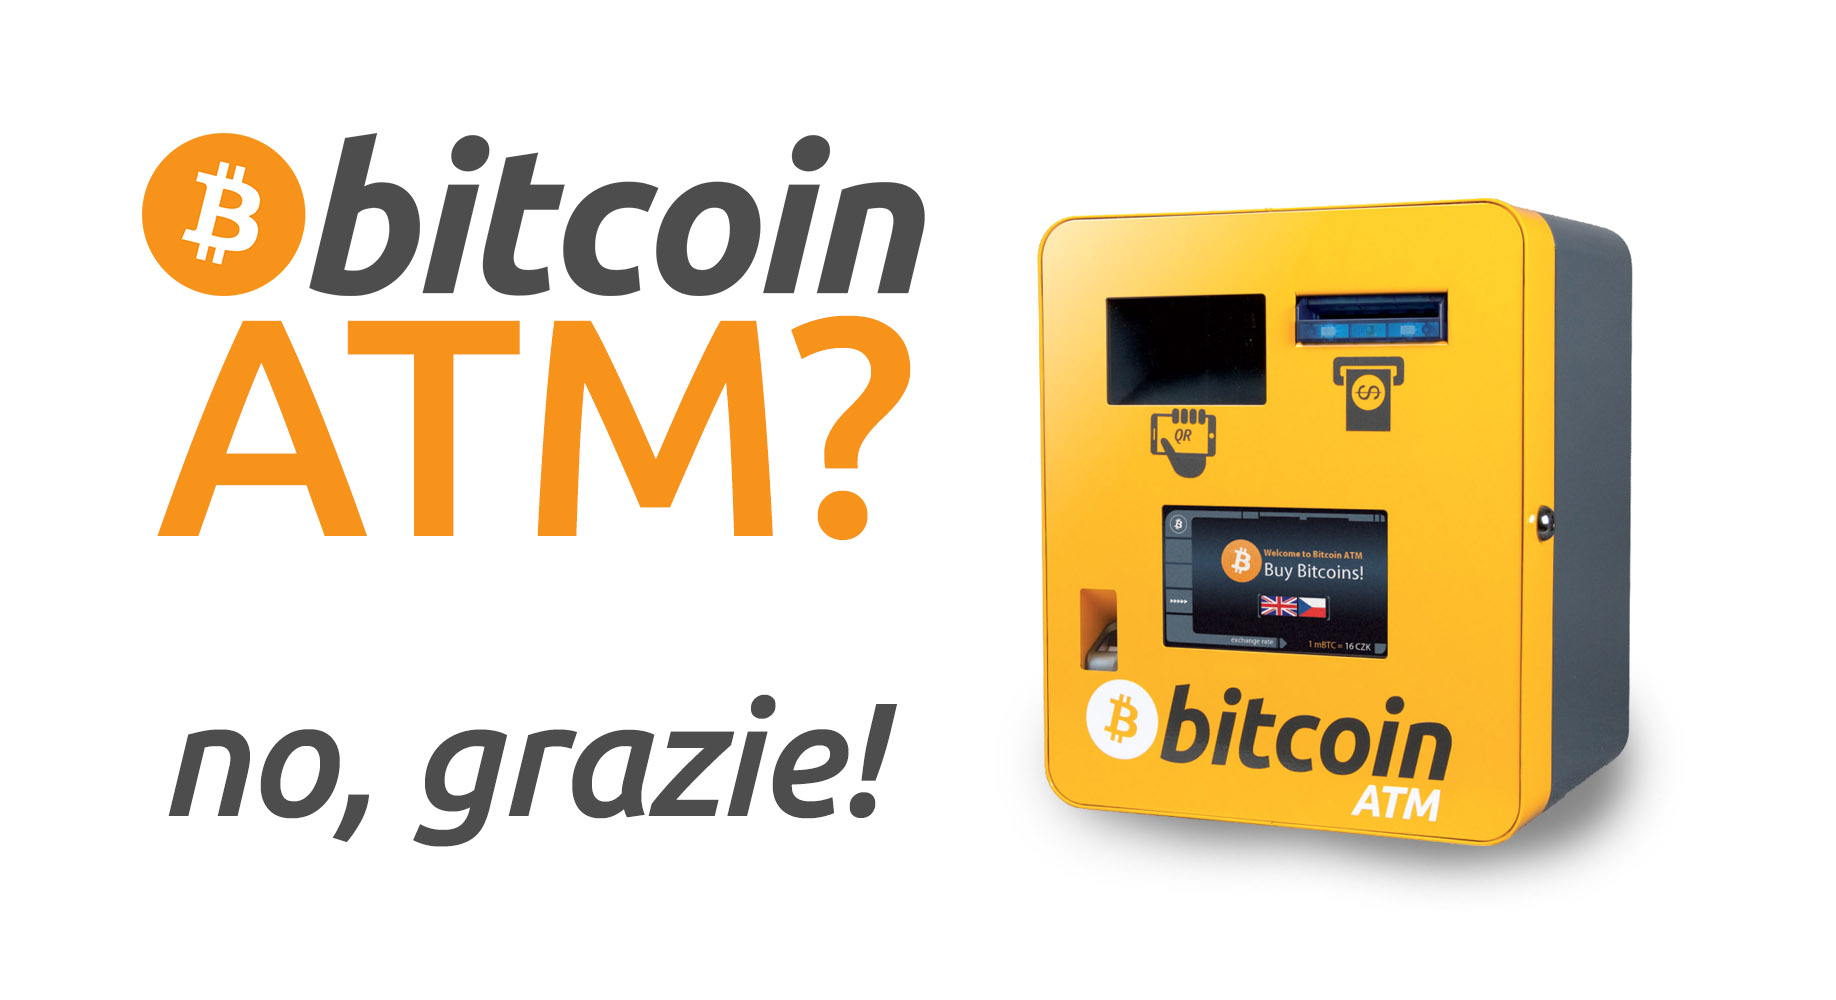 Nuovo partnership Lamassu per fornire una migliore conformità ATM - Bitcoin on air